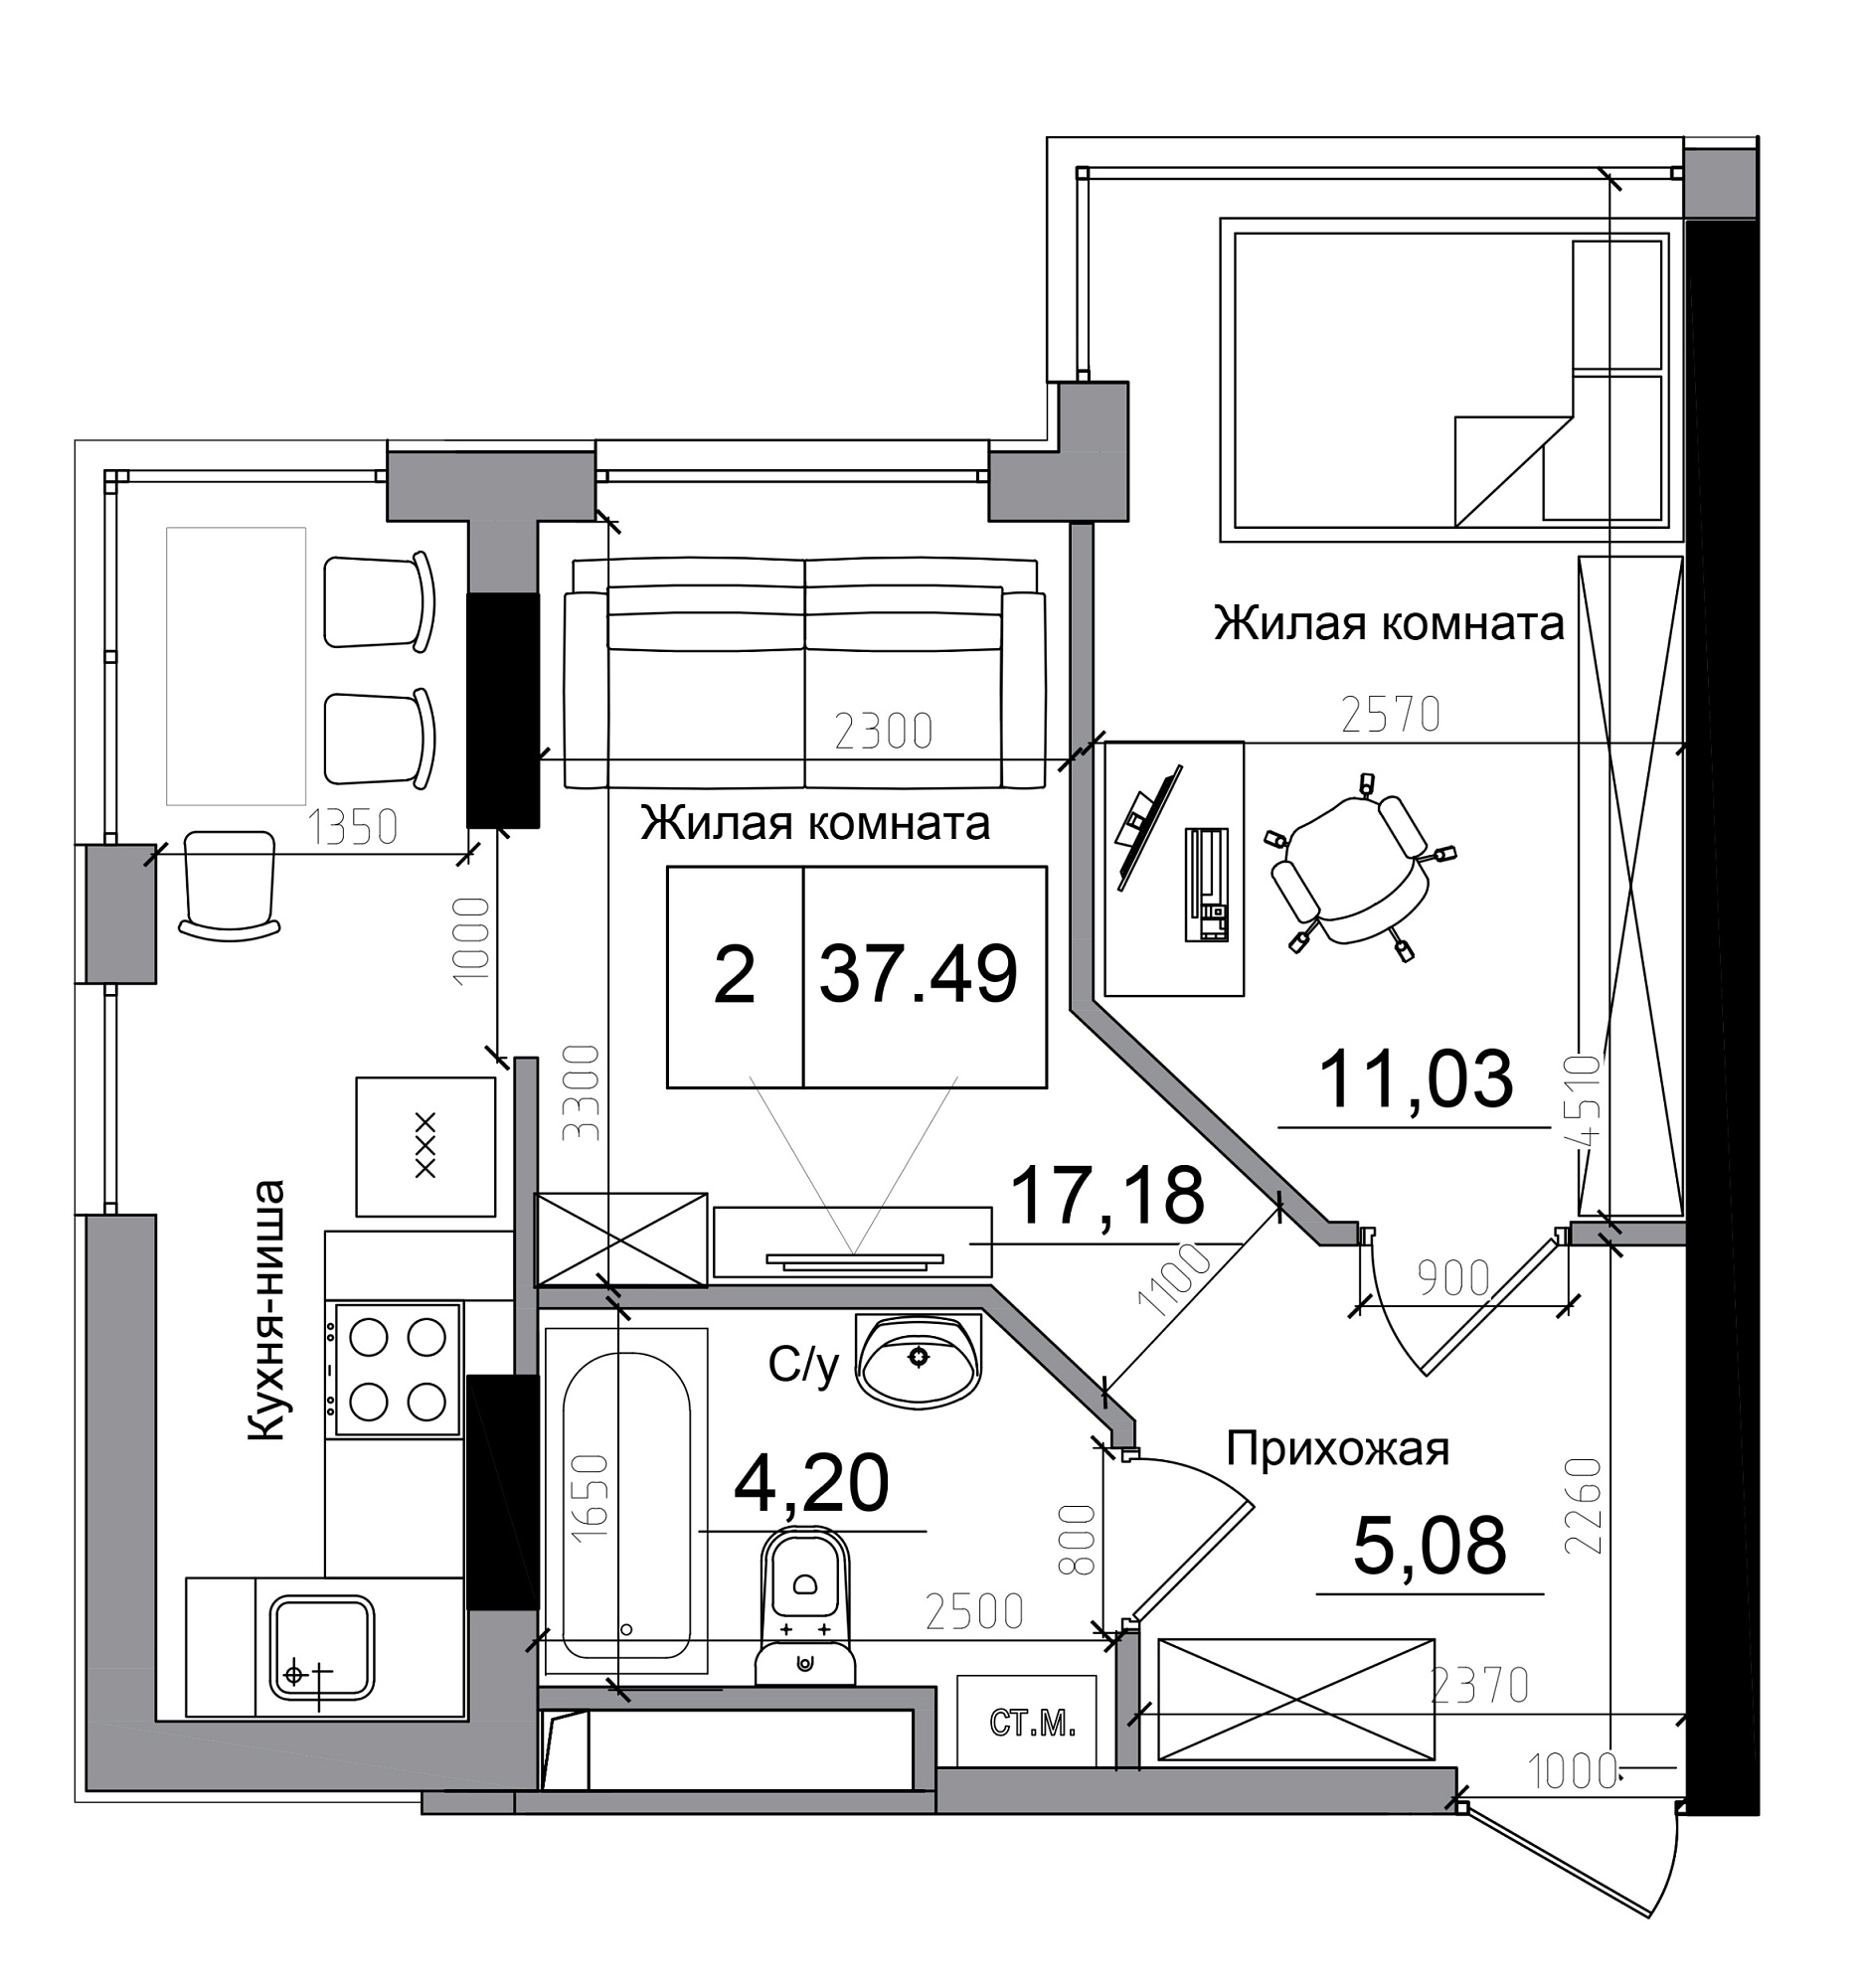 Планування 1-к квартира площею 37.49м2, AB-11-12/00005.